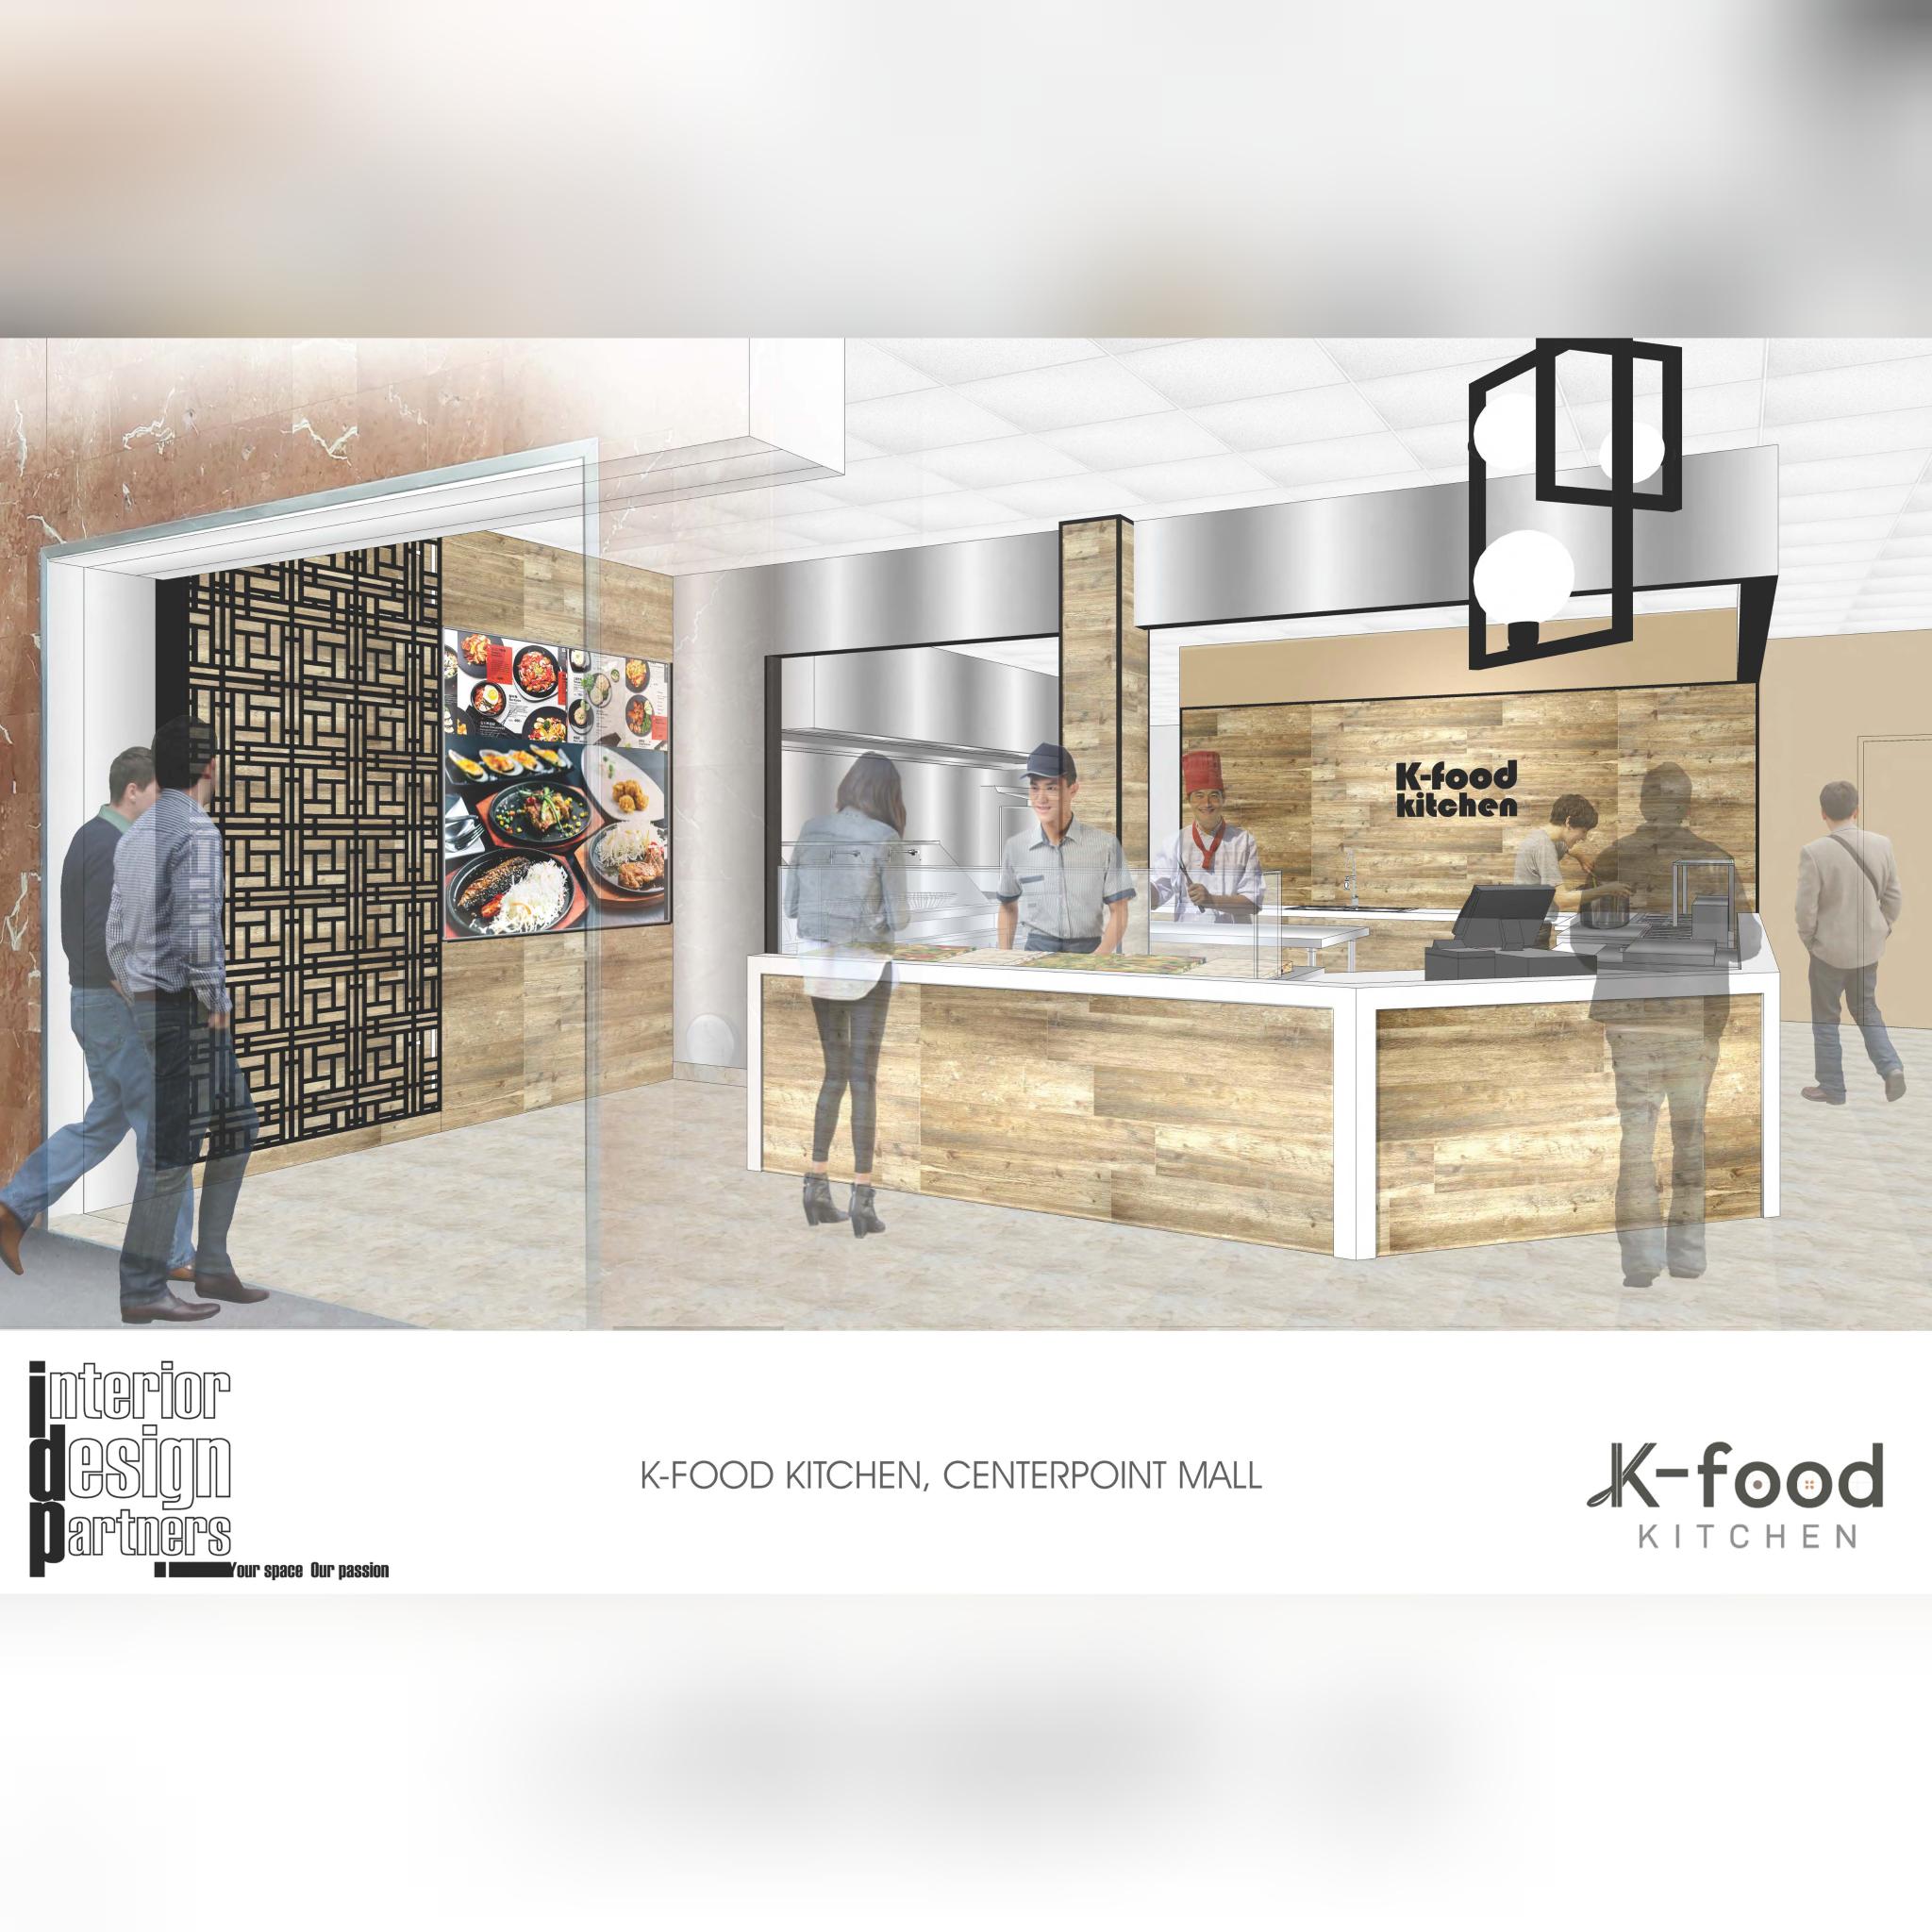 K-food kitchen, CenterPoint Mall, North York